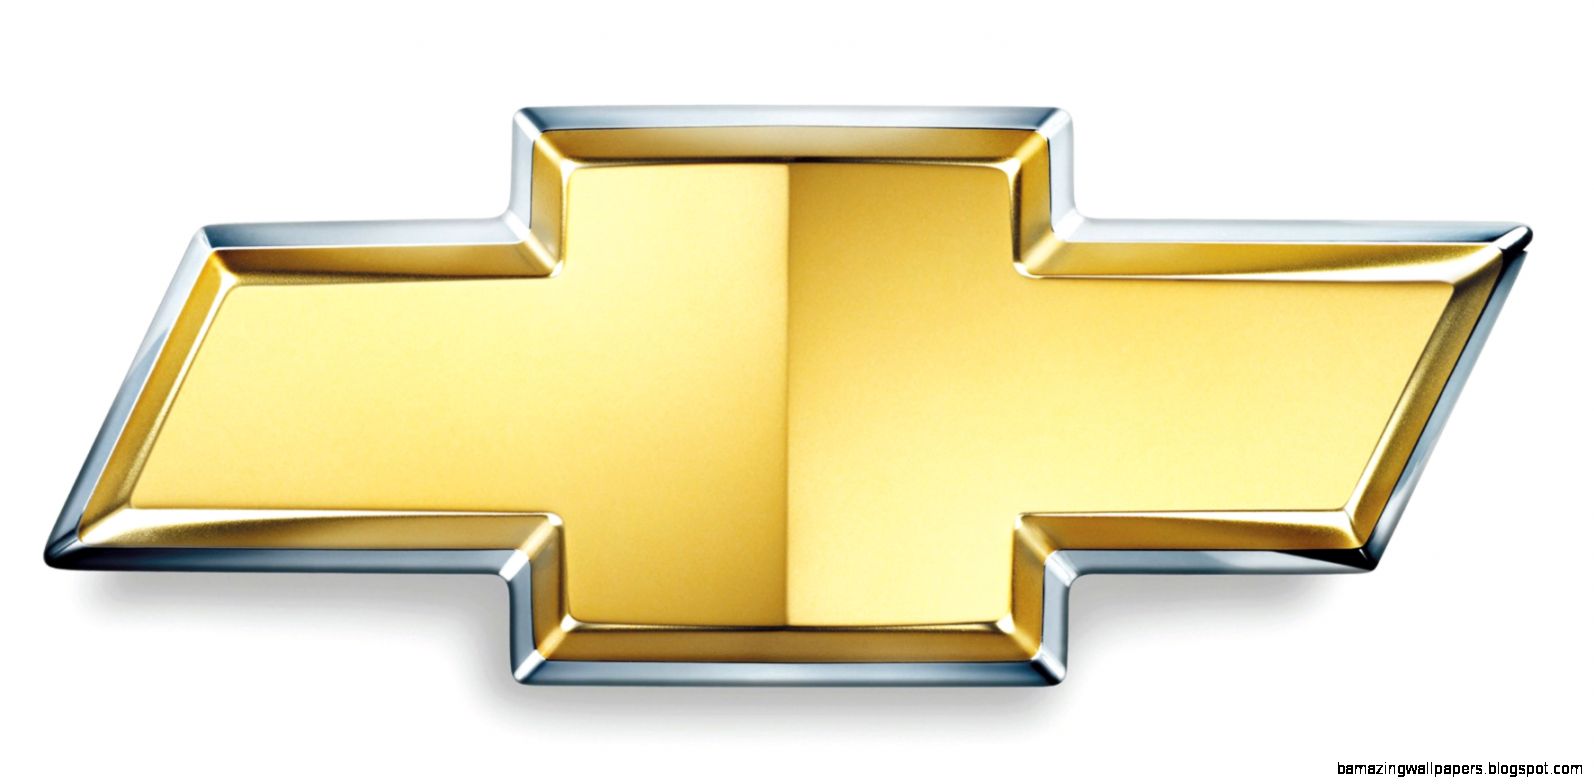 Chevy Chevrolet Logo